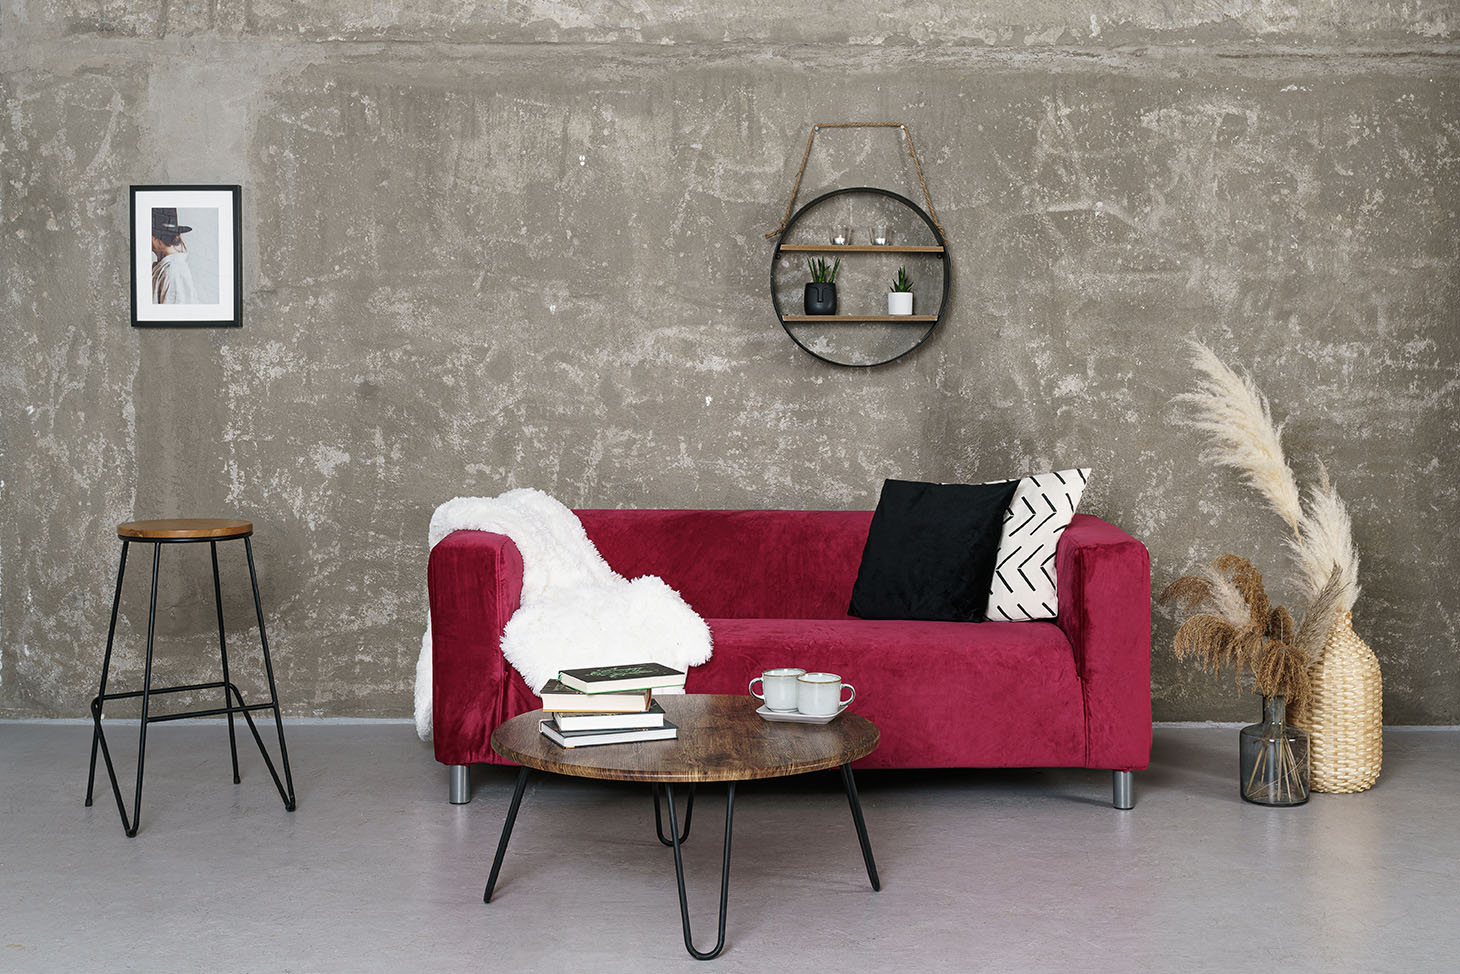 IKEA Klippan 2 Seater in Burgundy Velvet Sofa Cover